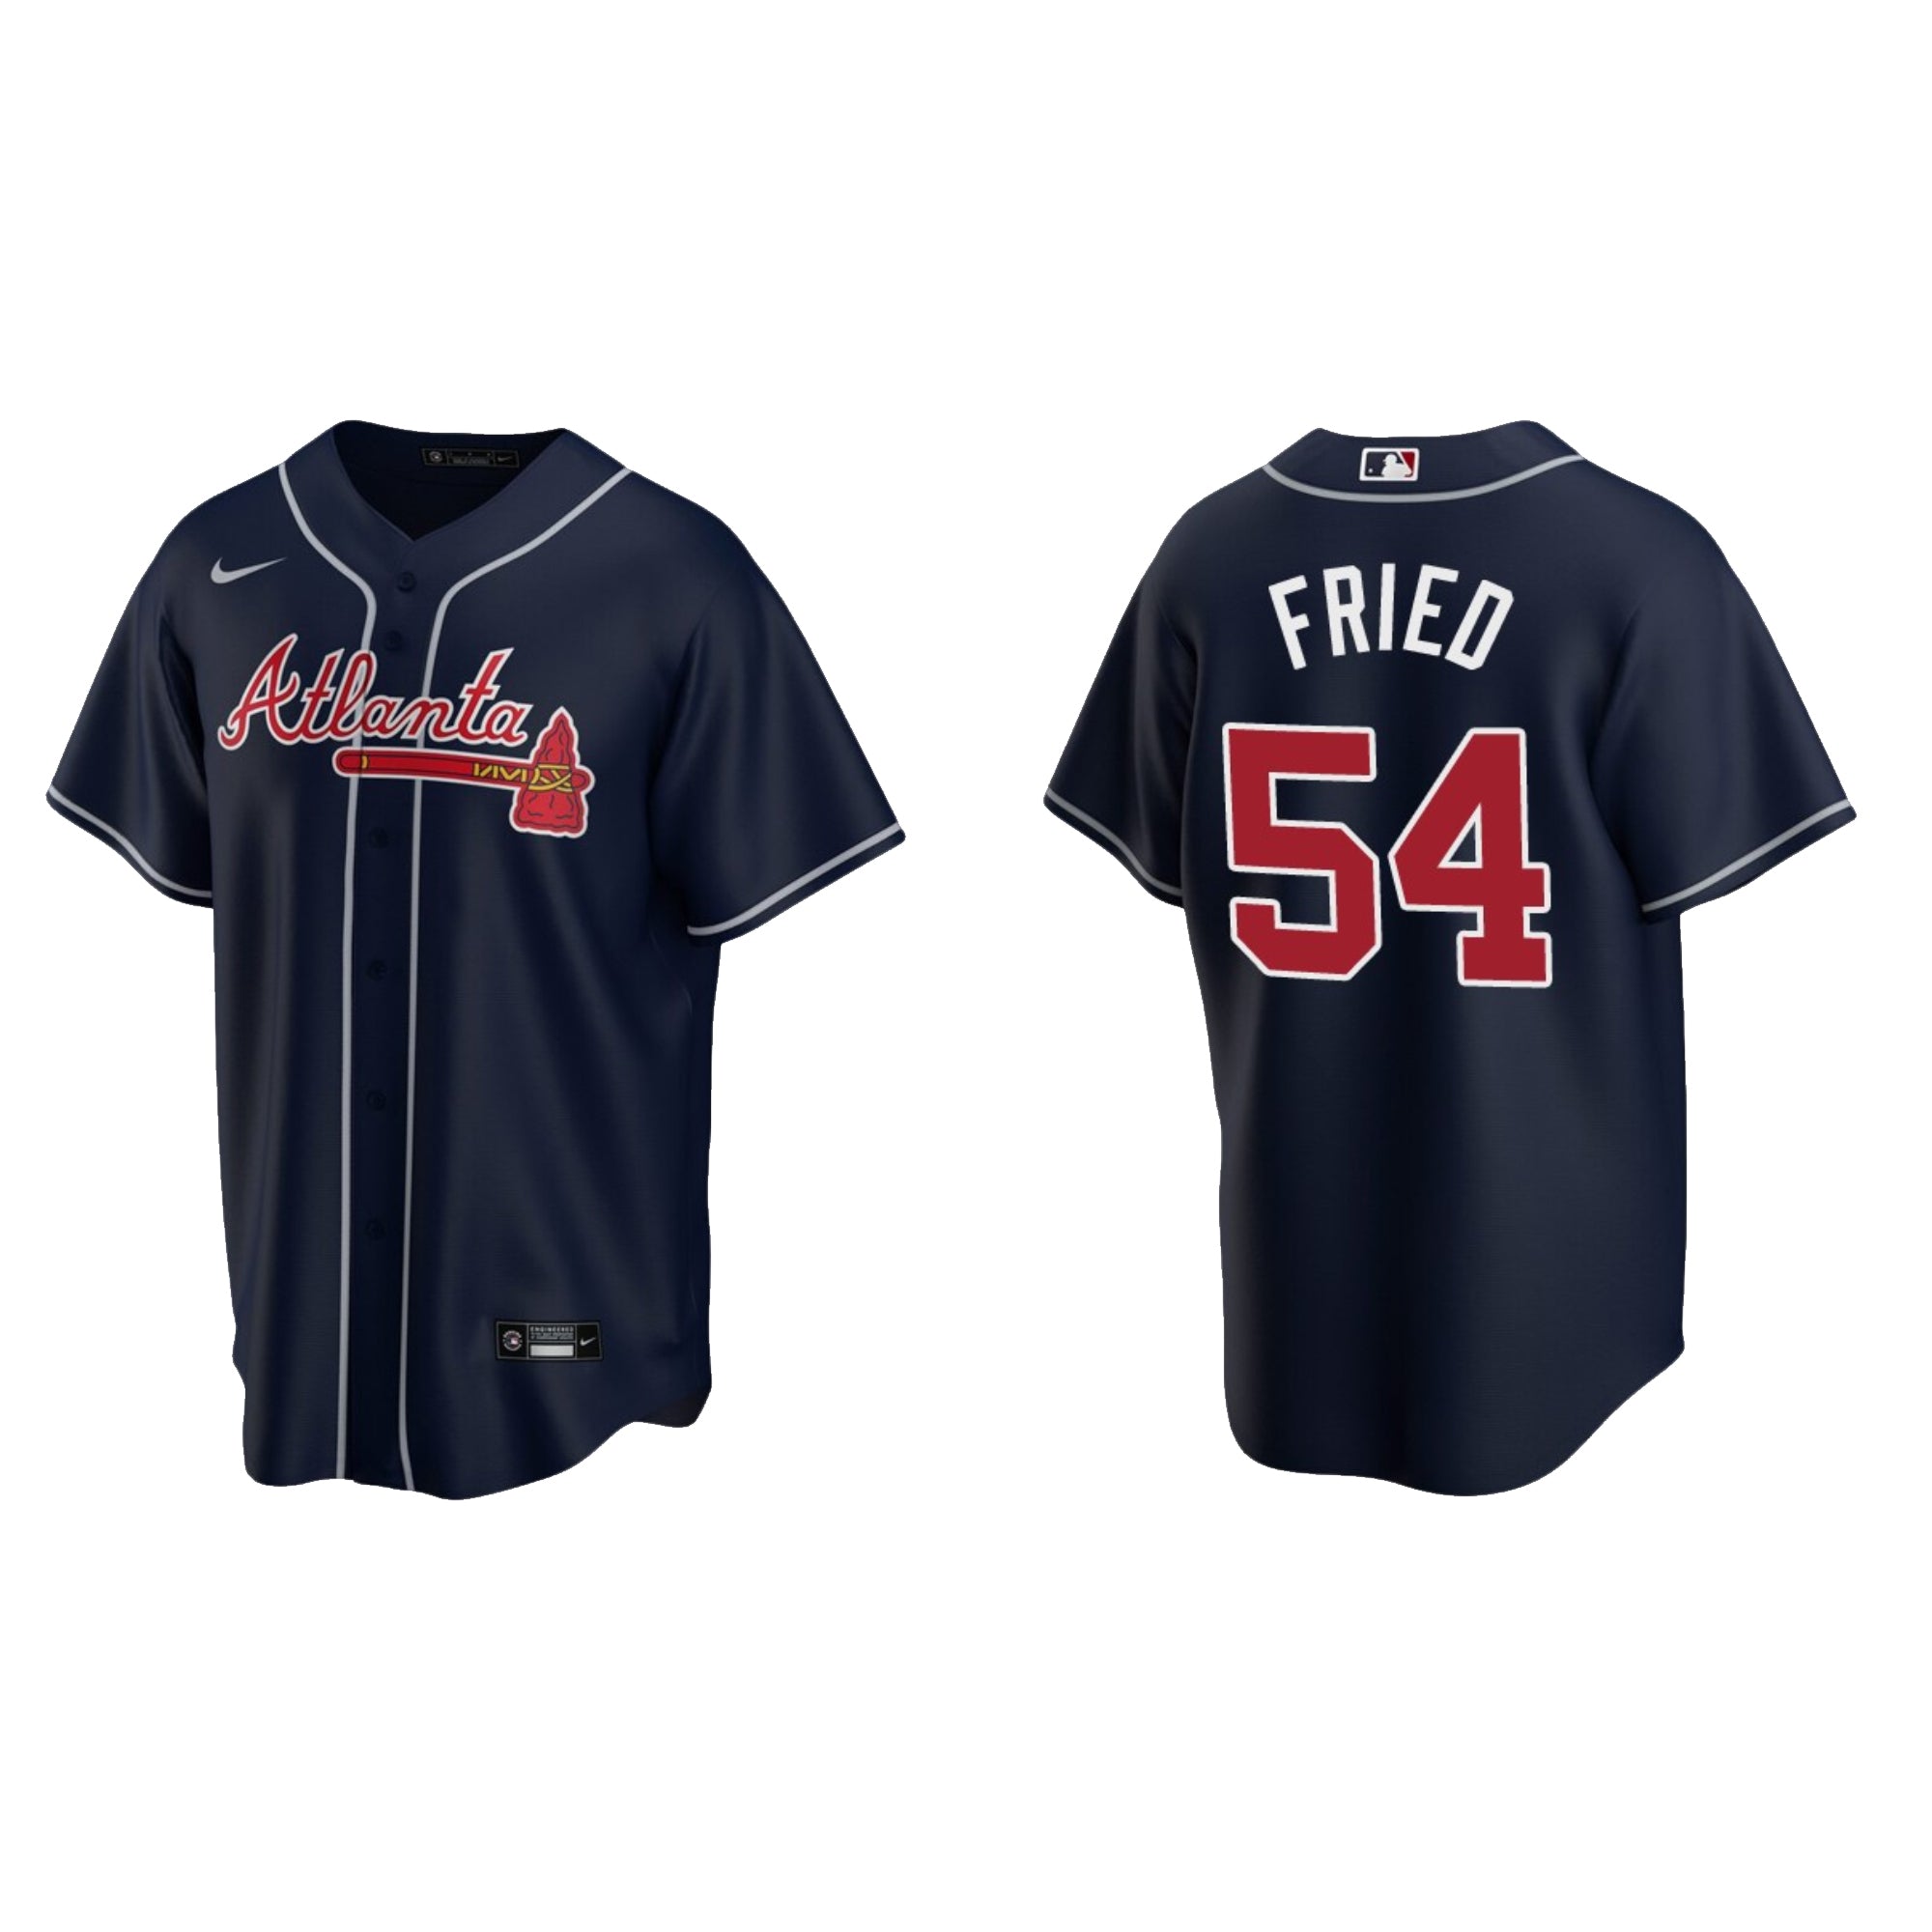 MLB Freddie Freeman Atlanta Braves Jersey